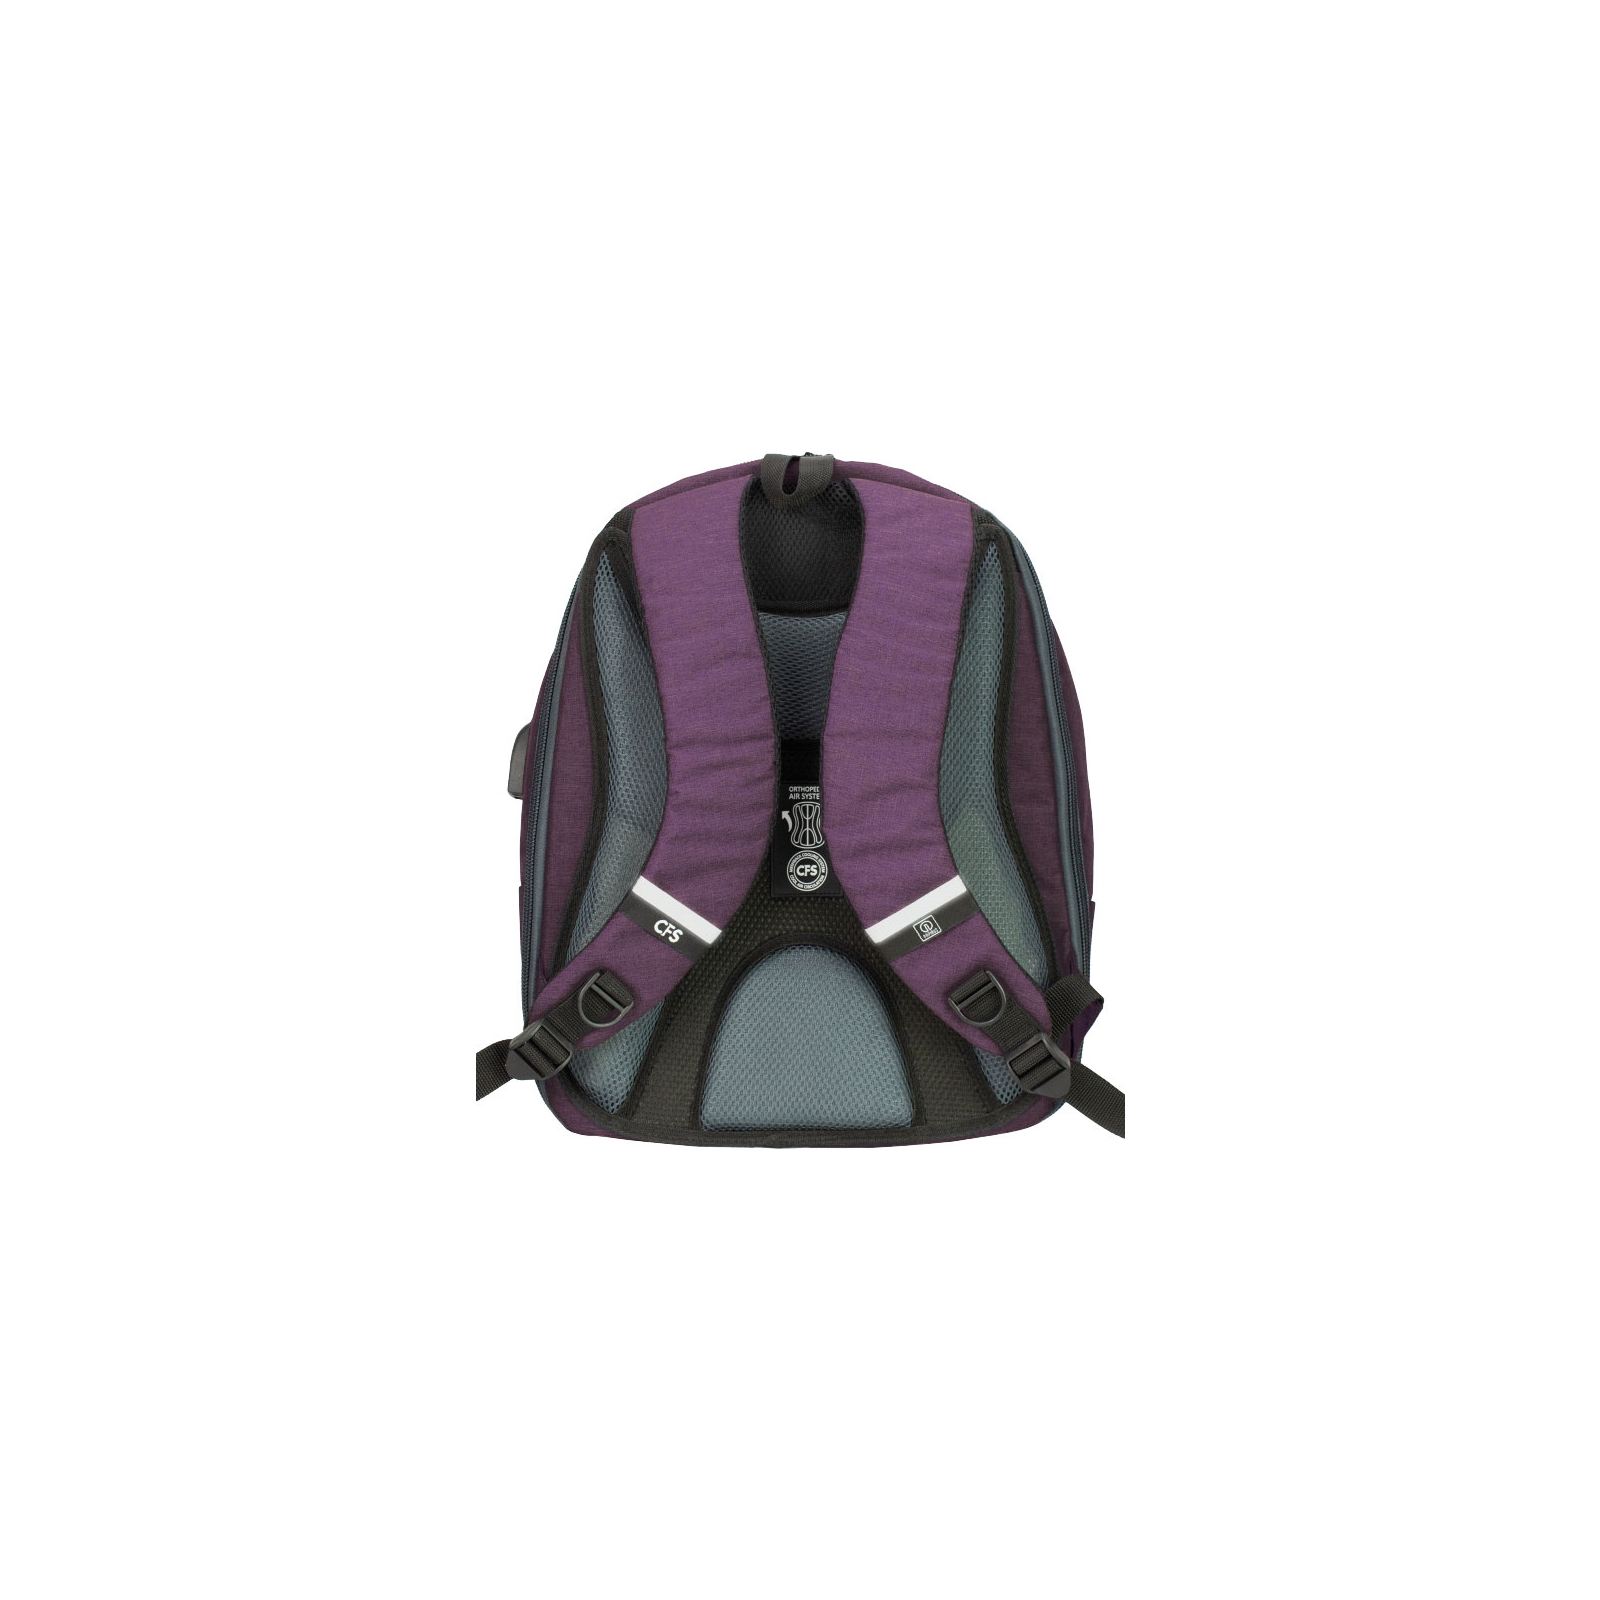 Рюкзак школьный Cool For School 44x32x20 см 28 л Розовый (CF86588-12) изображение 3